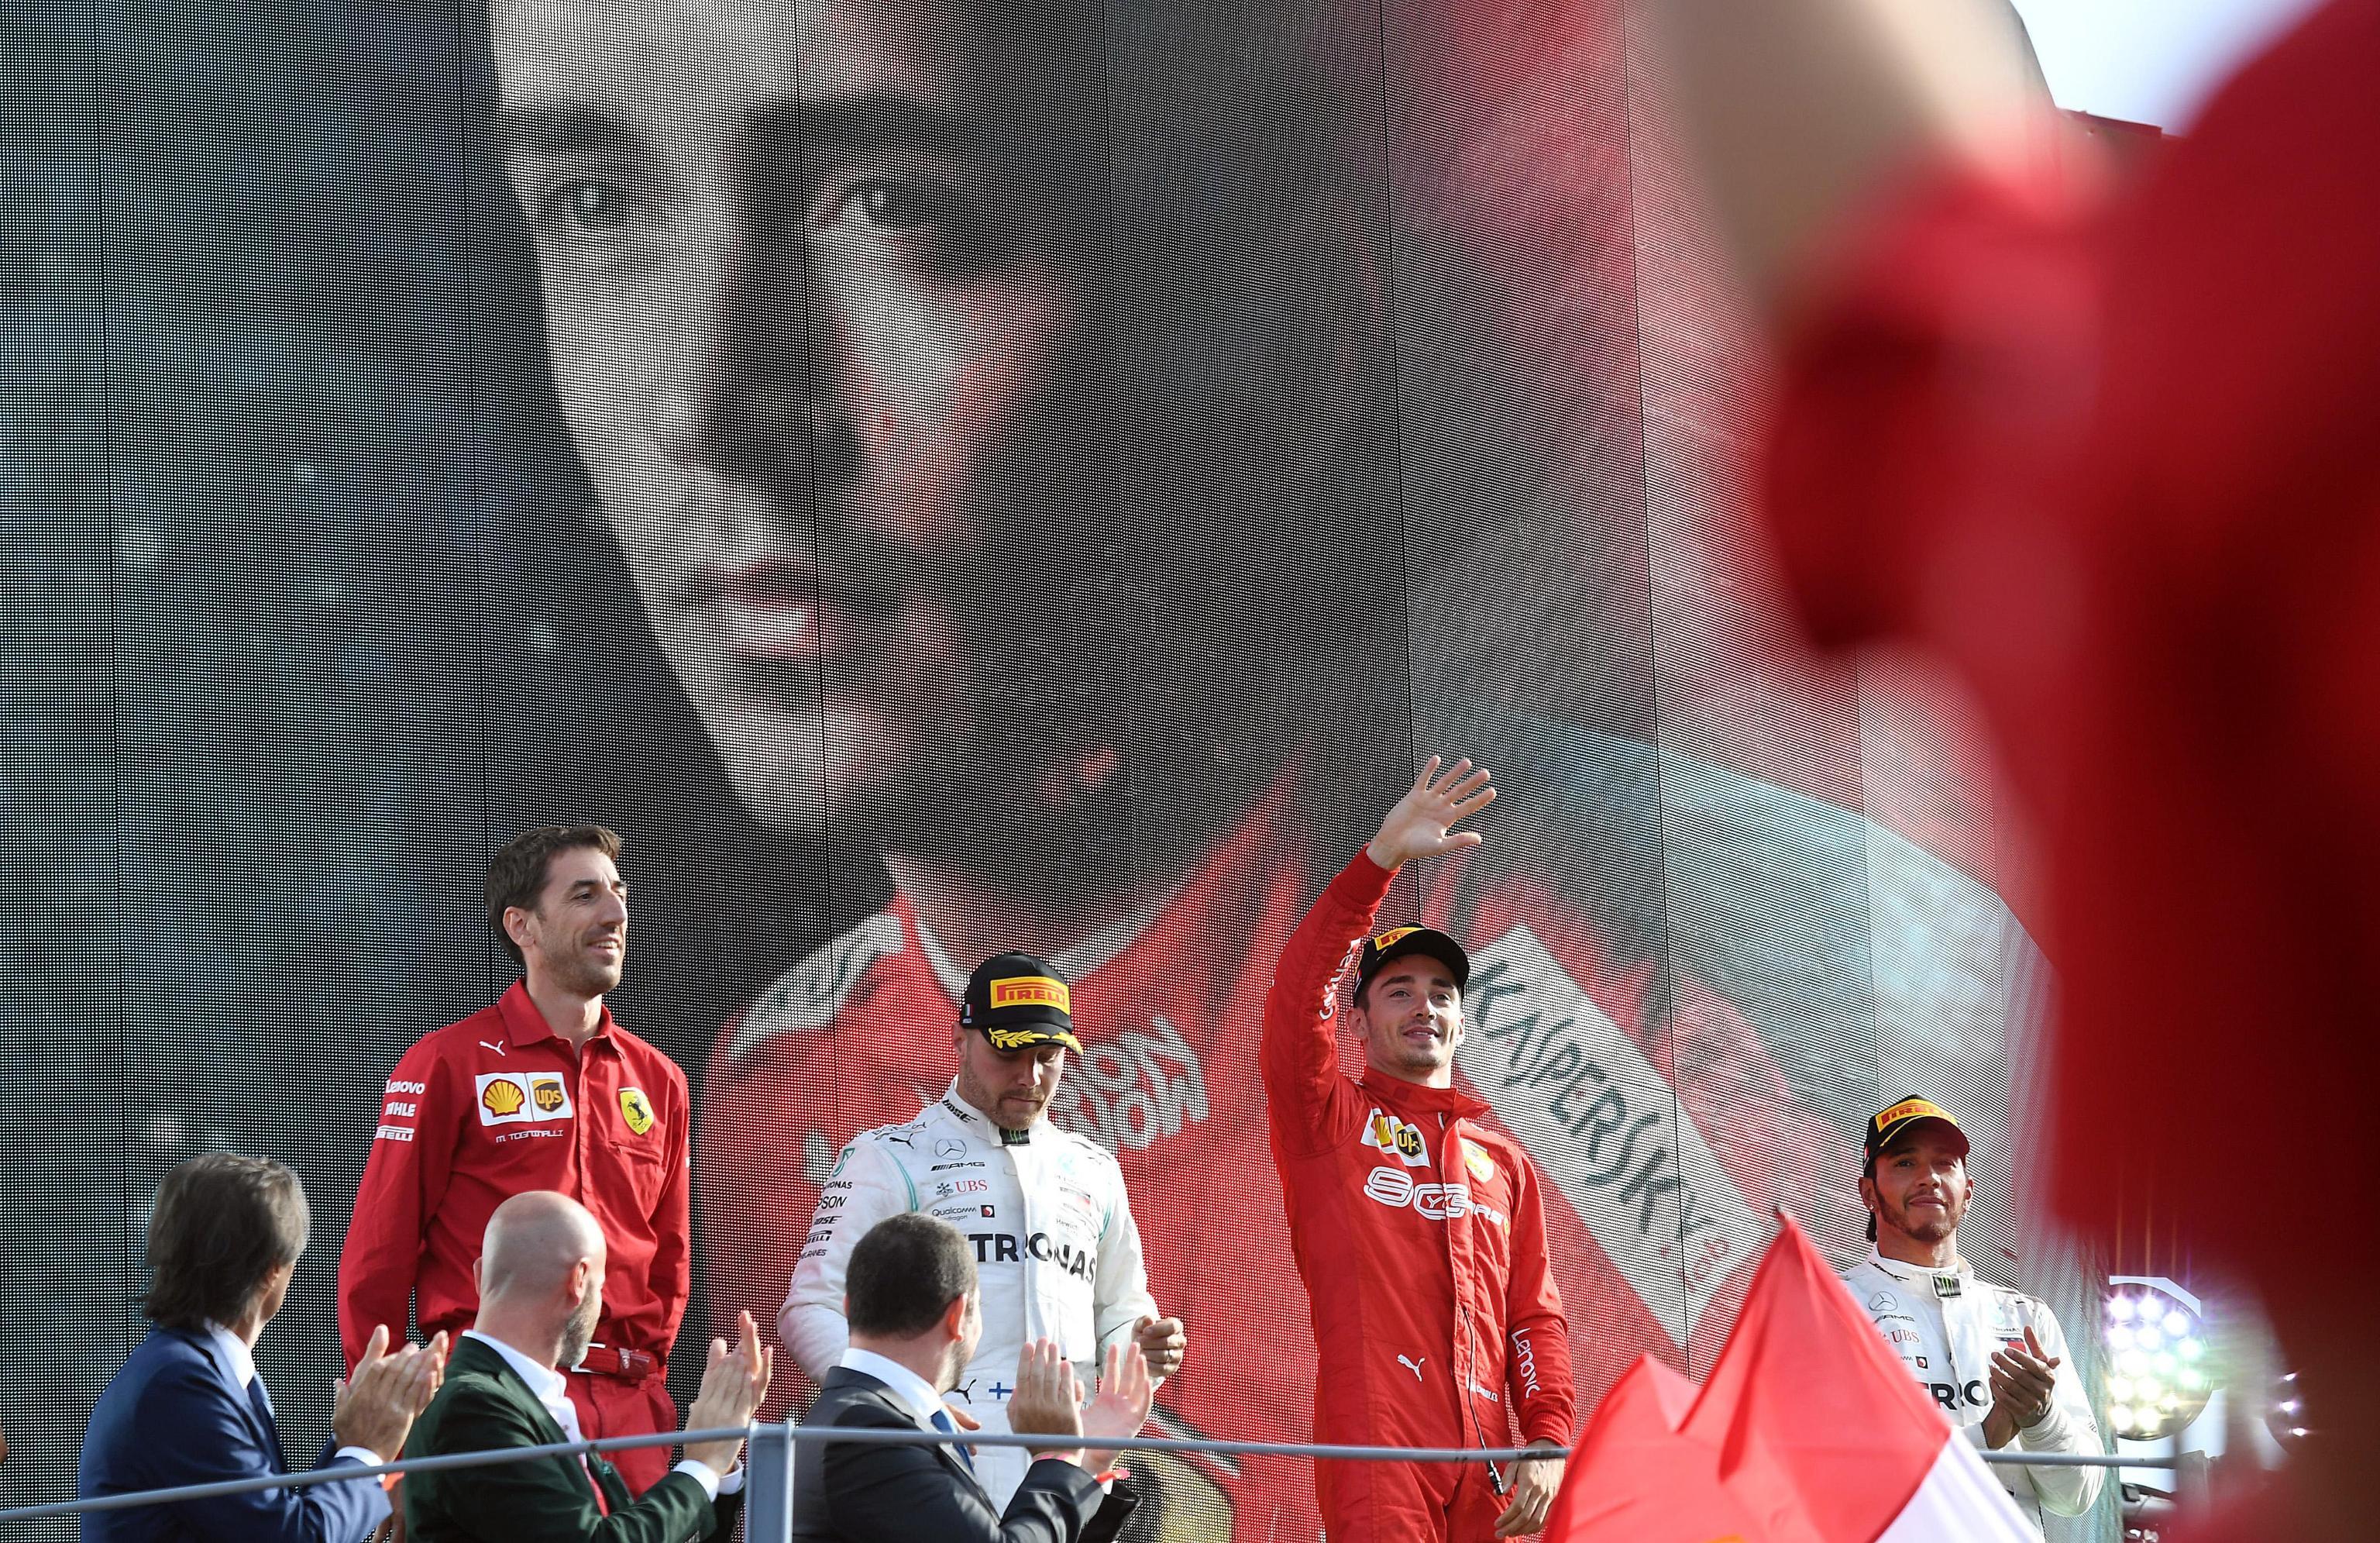 Leclerc della Ferrari festeggia sul podio la vittoria del gp di Formula 1. A completare il podio Bottas e Hamilton della Mercedes